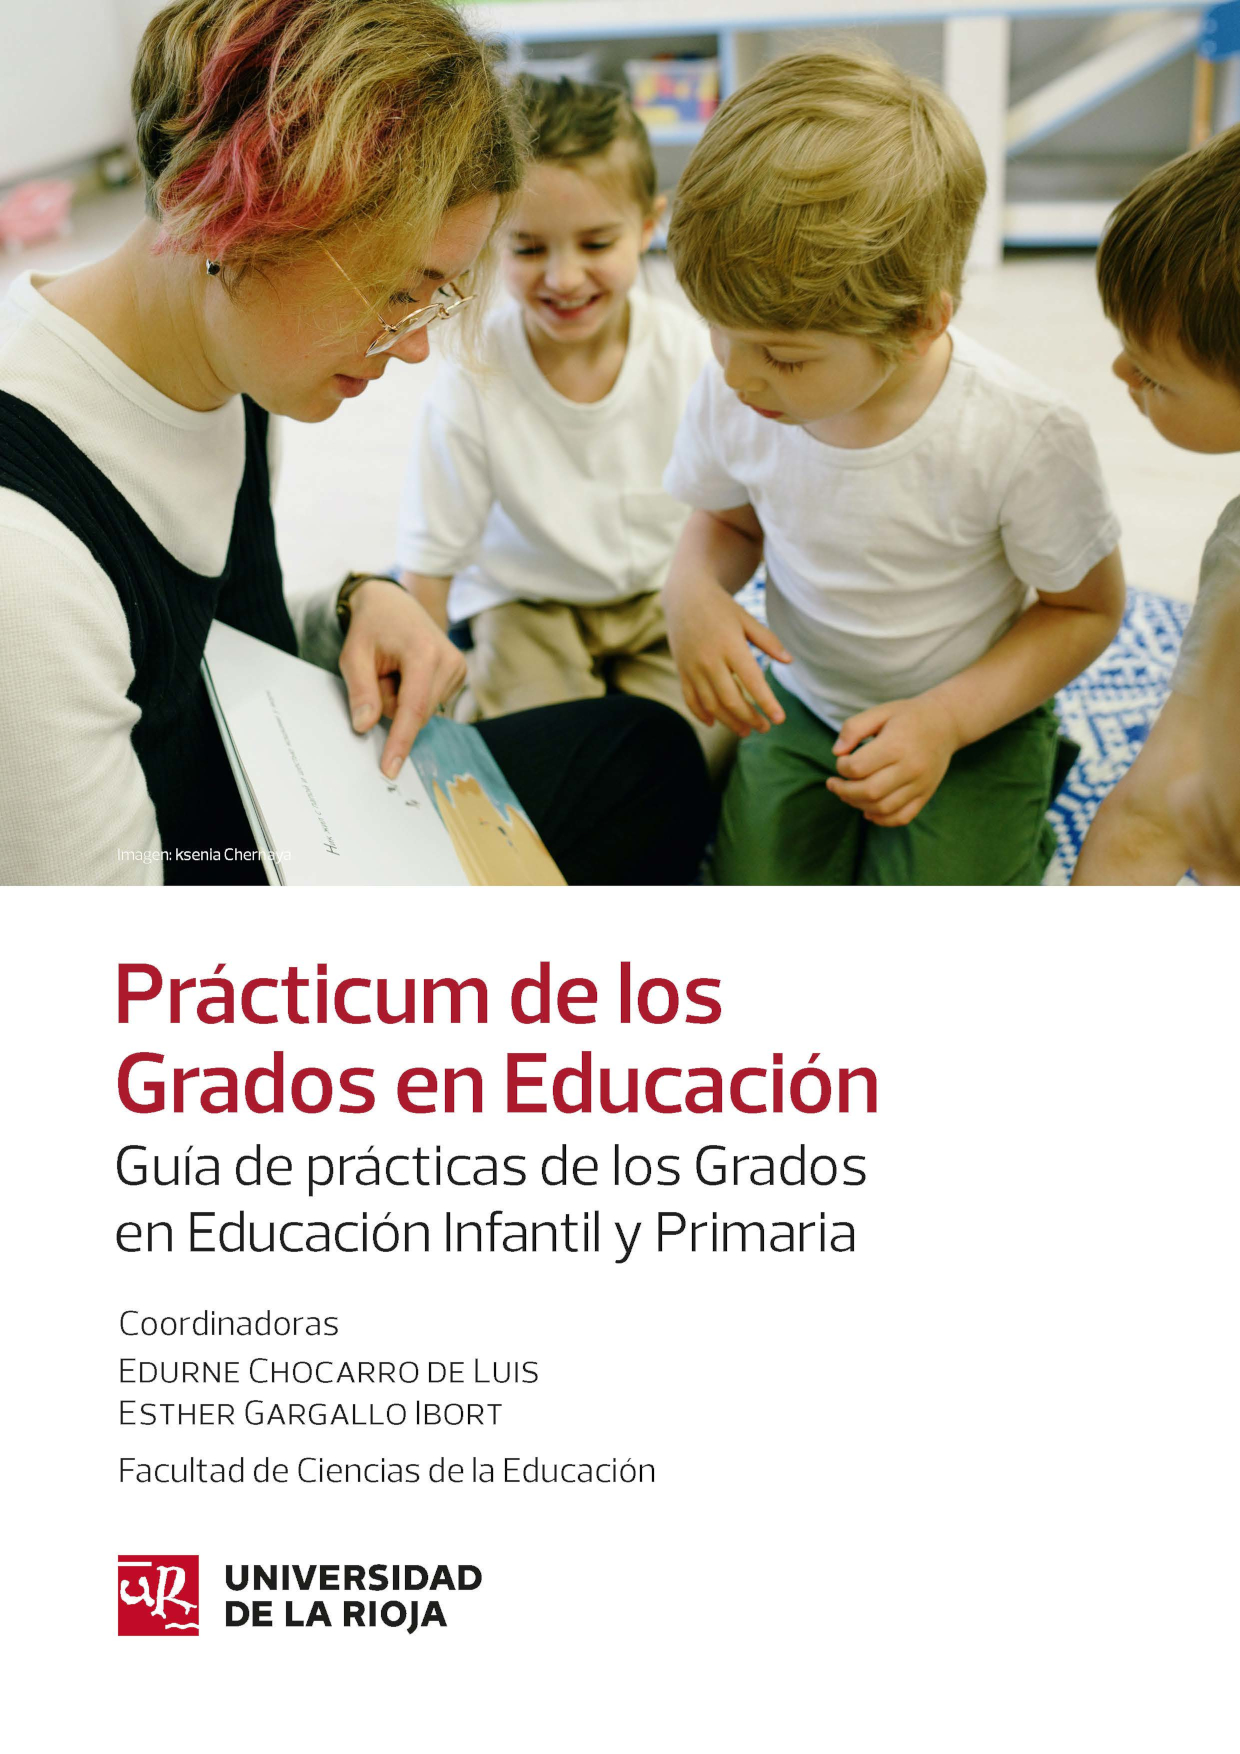 Imagen de portada del libro Guía de prácticas de los Grados en Educación Infantil y Primaria